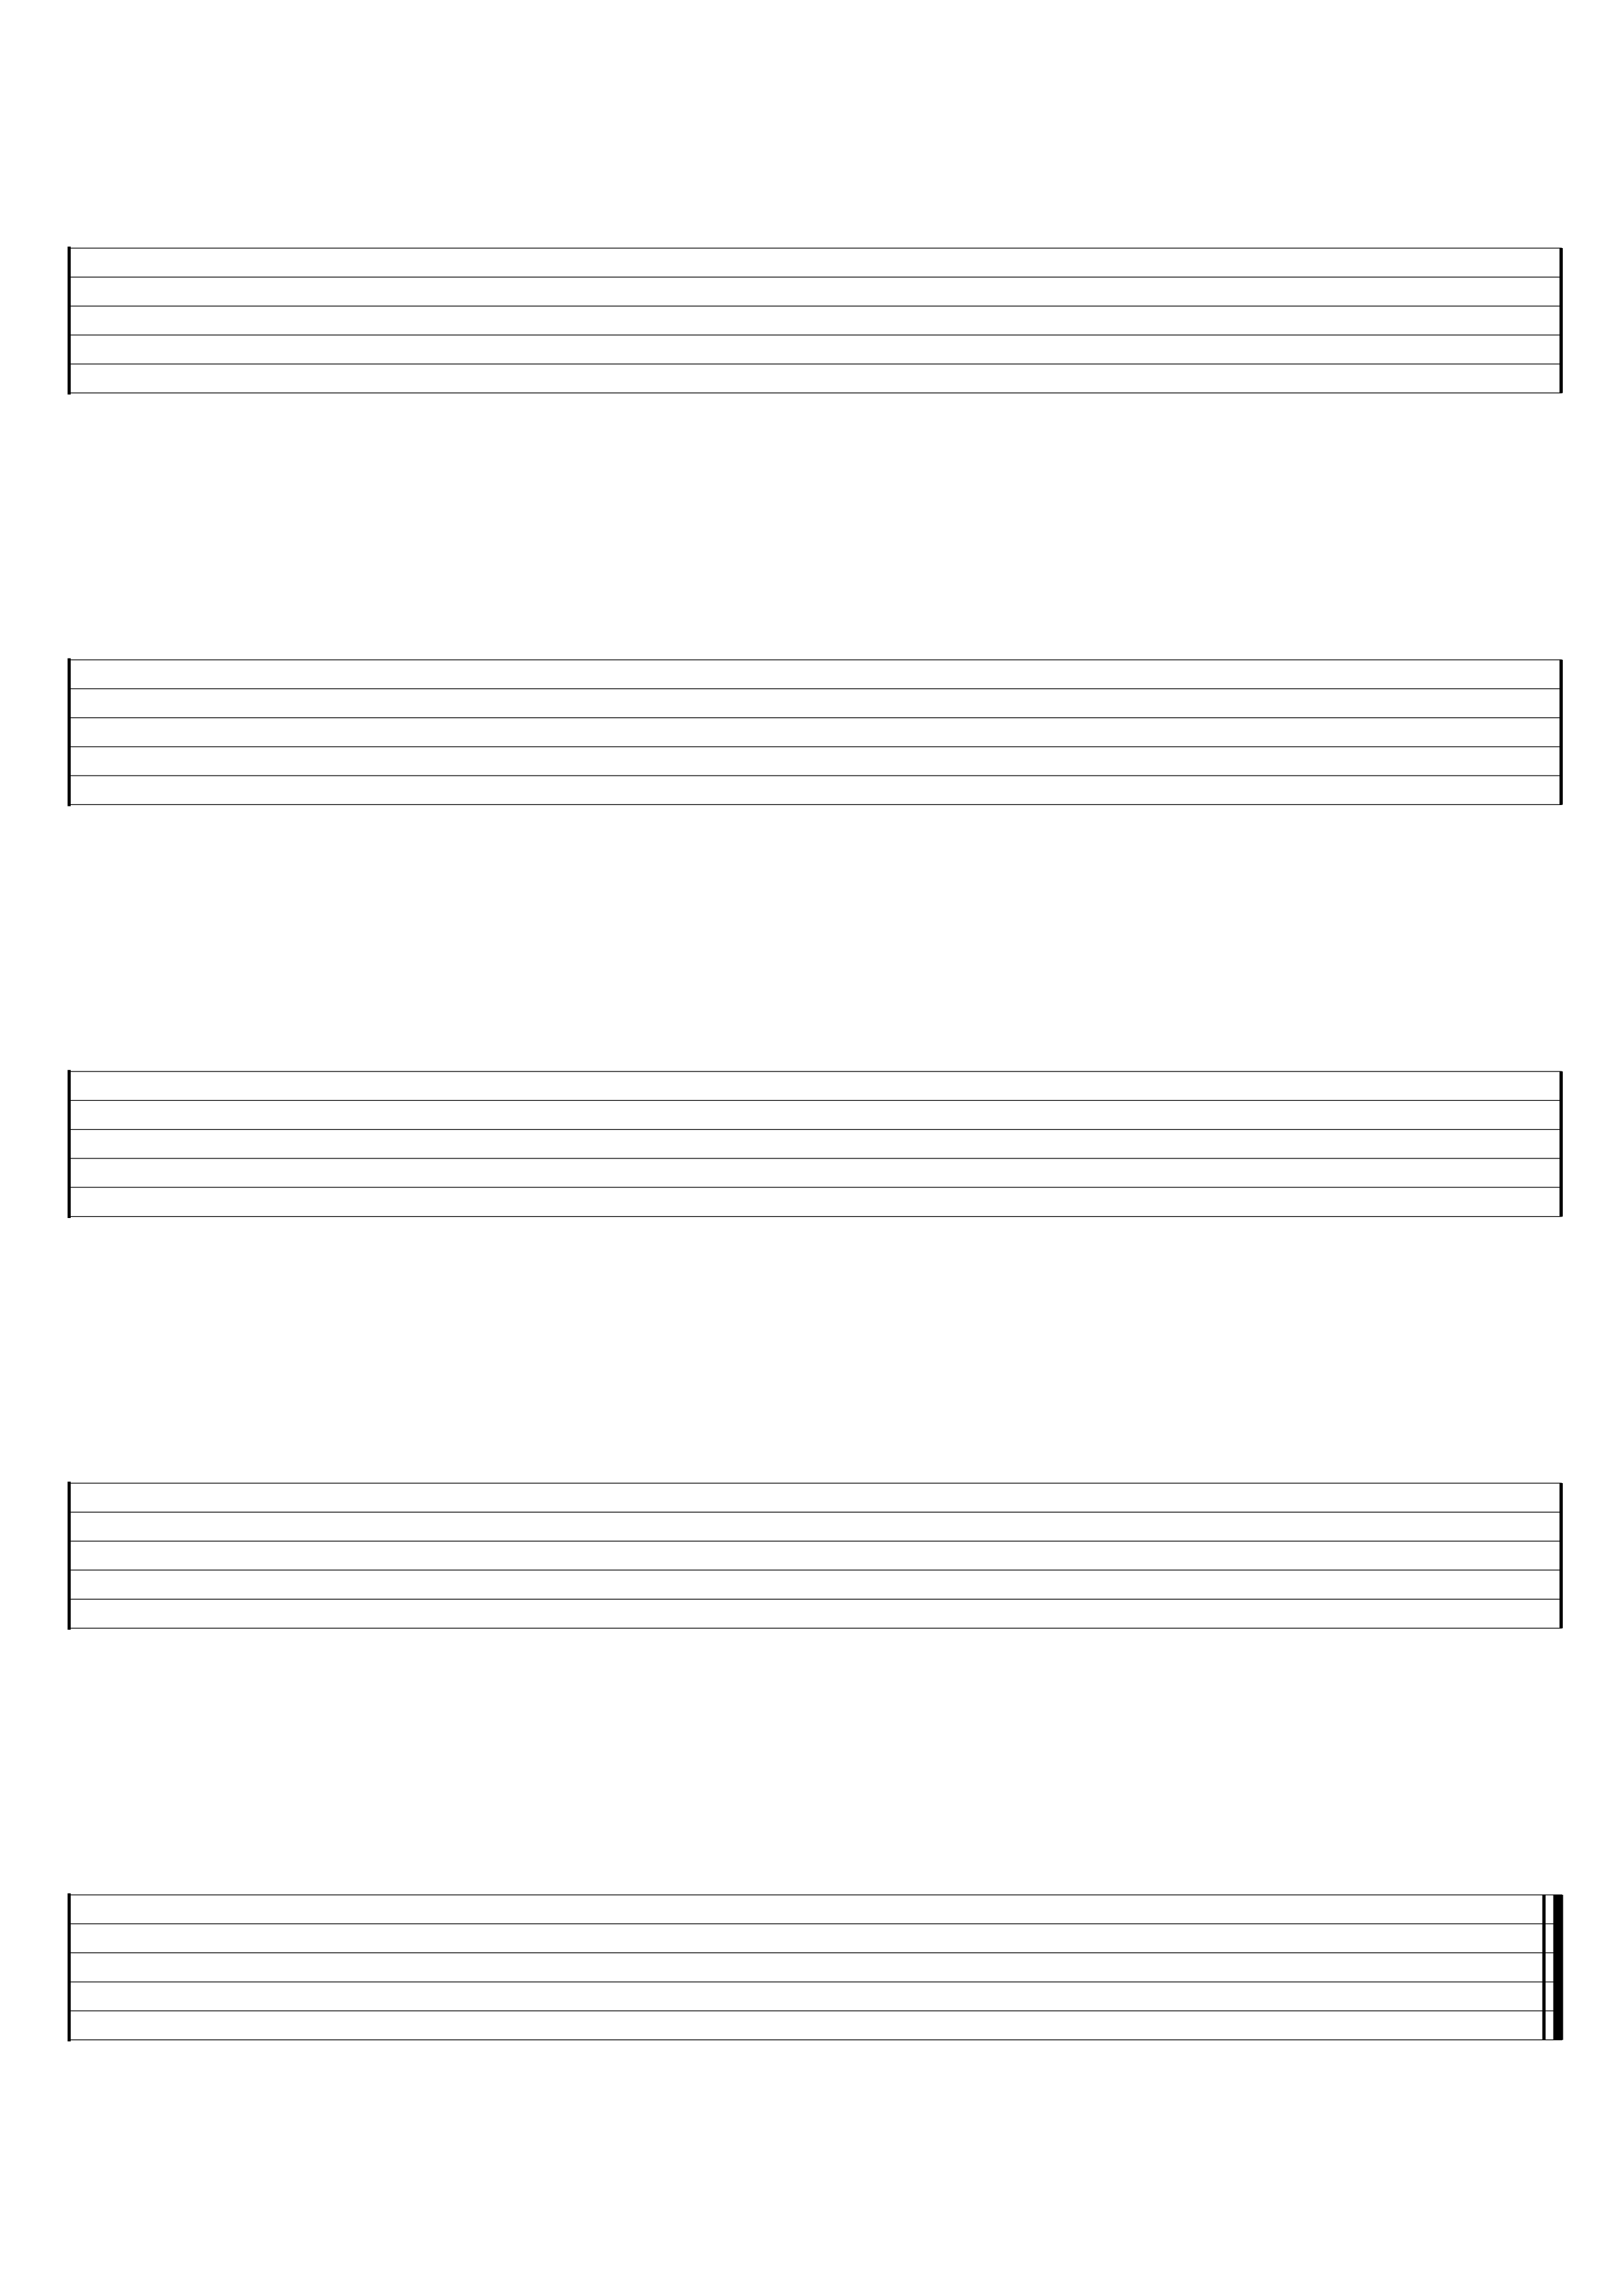 free printable blank guitar tab sheets